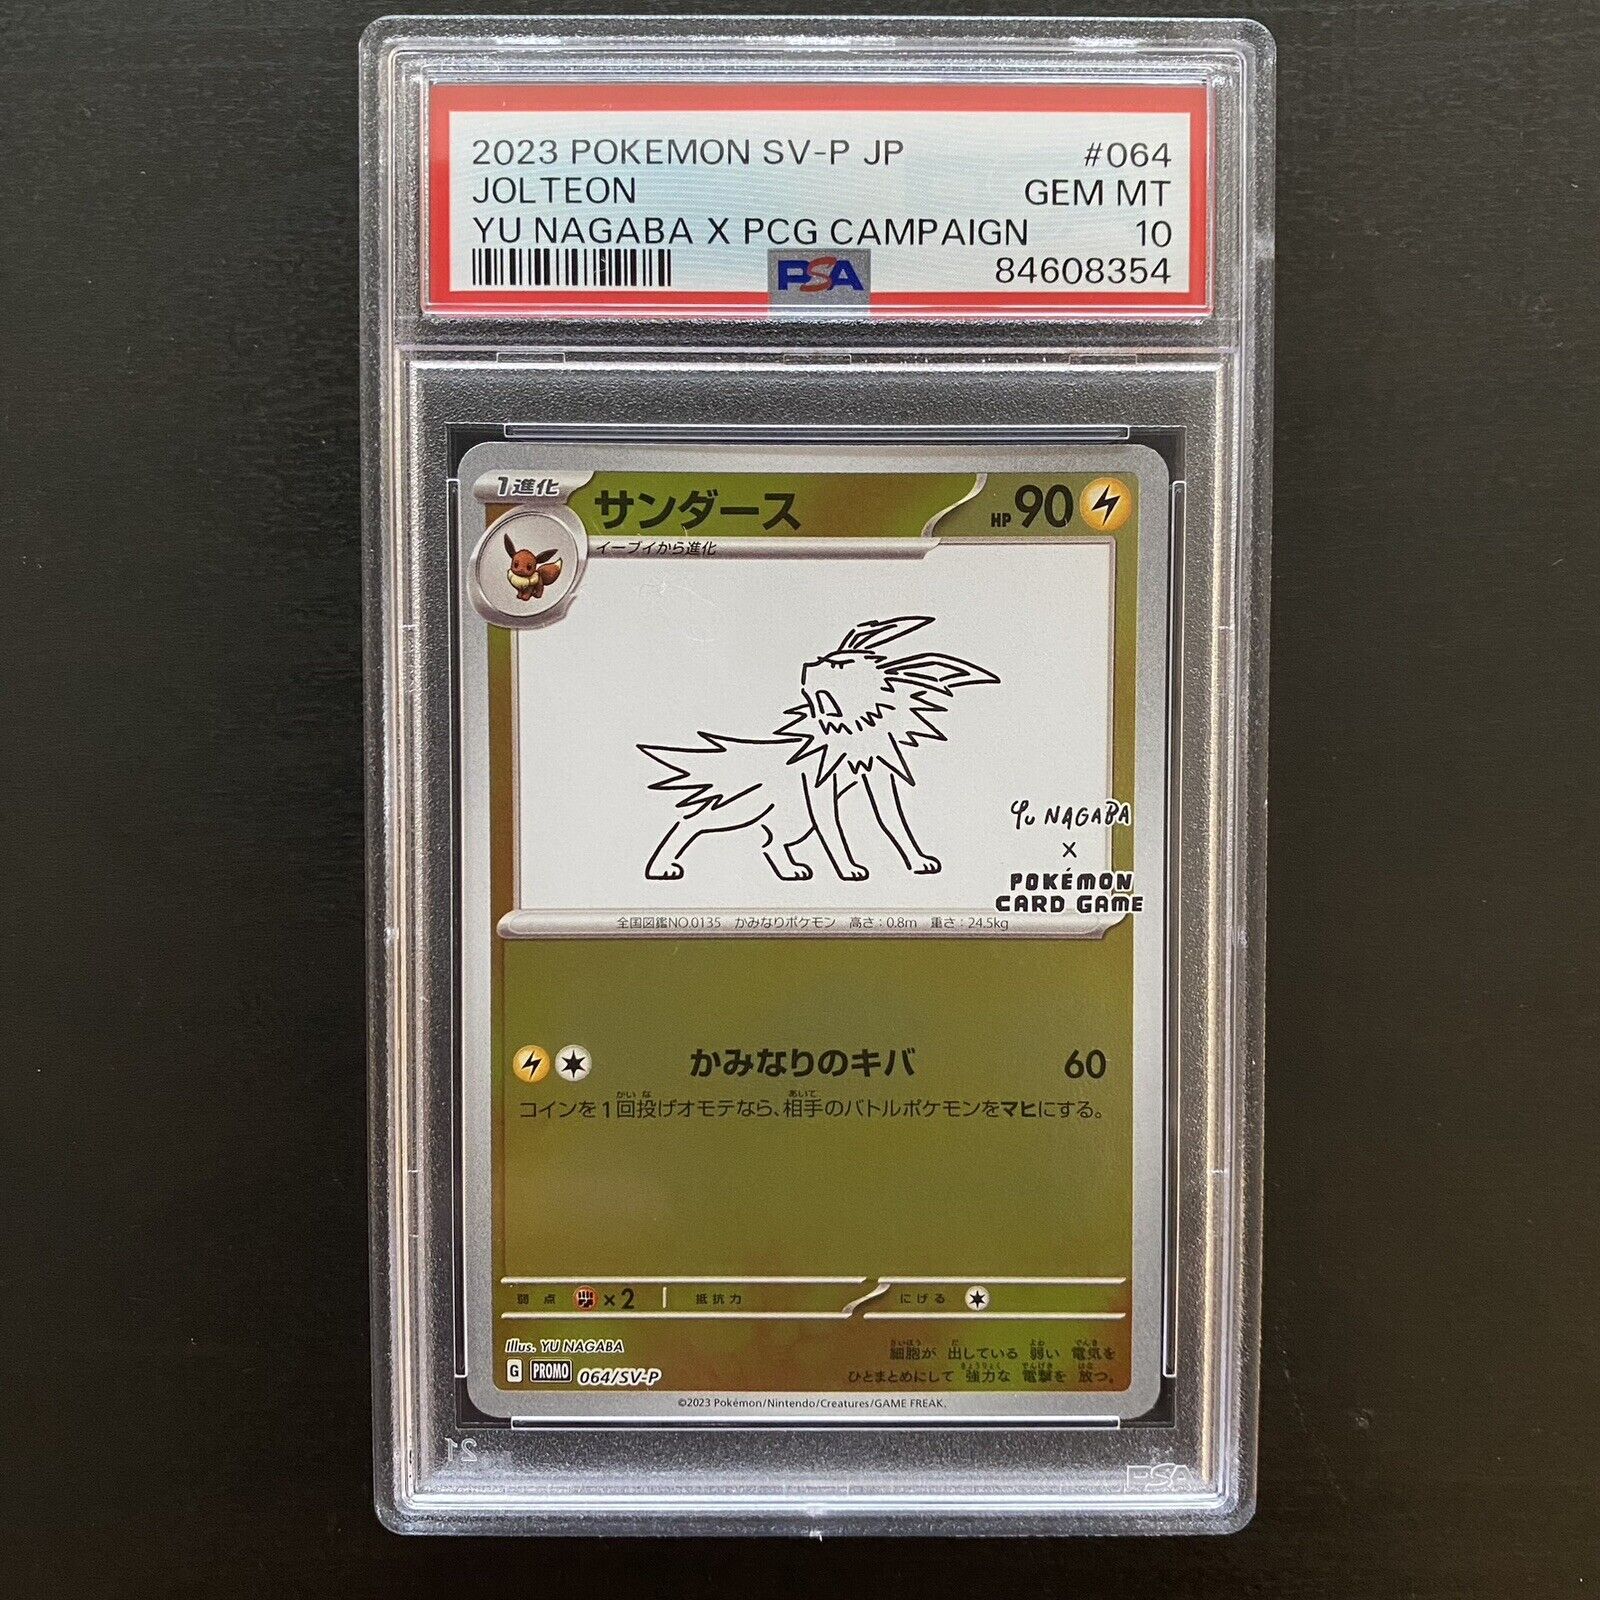 JOLTEON 064/SV-P | PSA 10 | Yu Nagaba Japanese Graded Pokémon Card